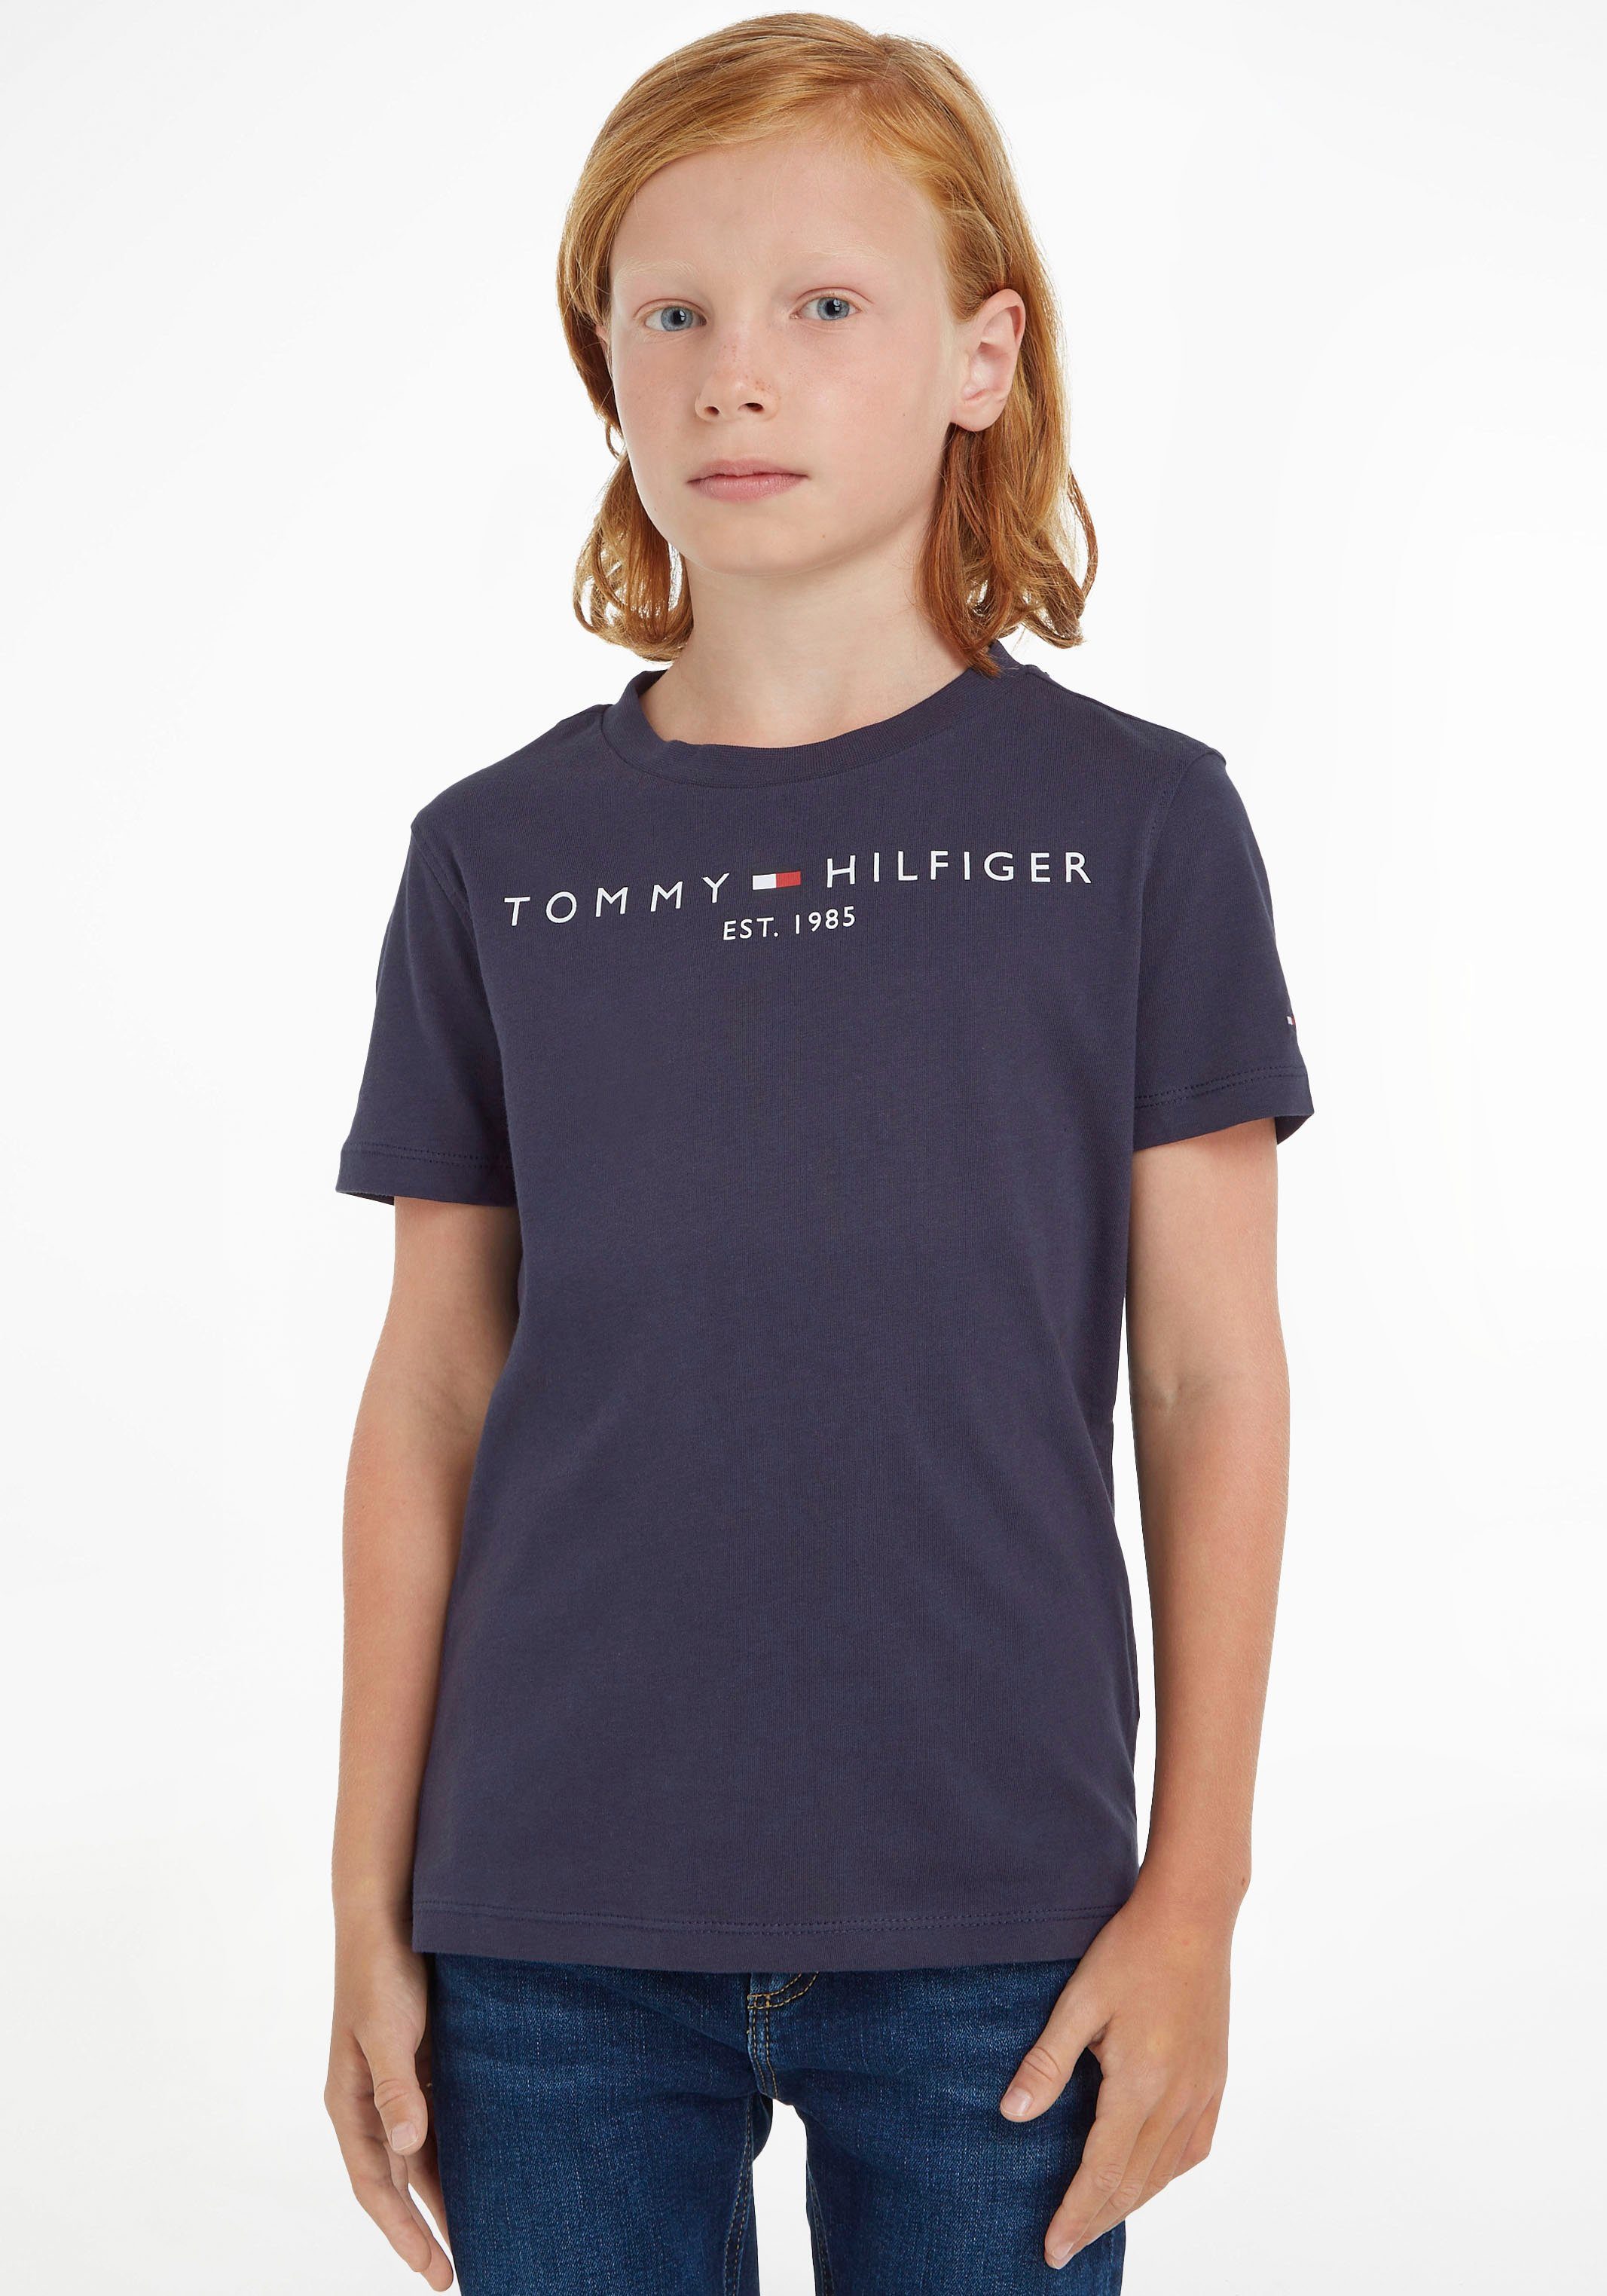 ESSENTIAL Tommy Mädchen Hilfiger Jungen und für T-Shirt TEE